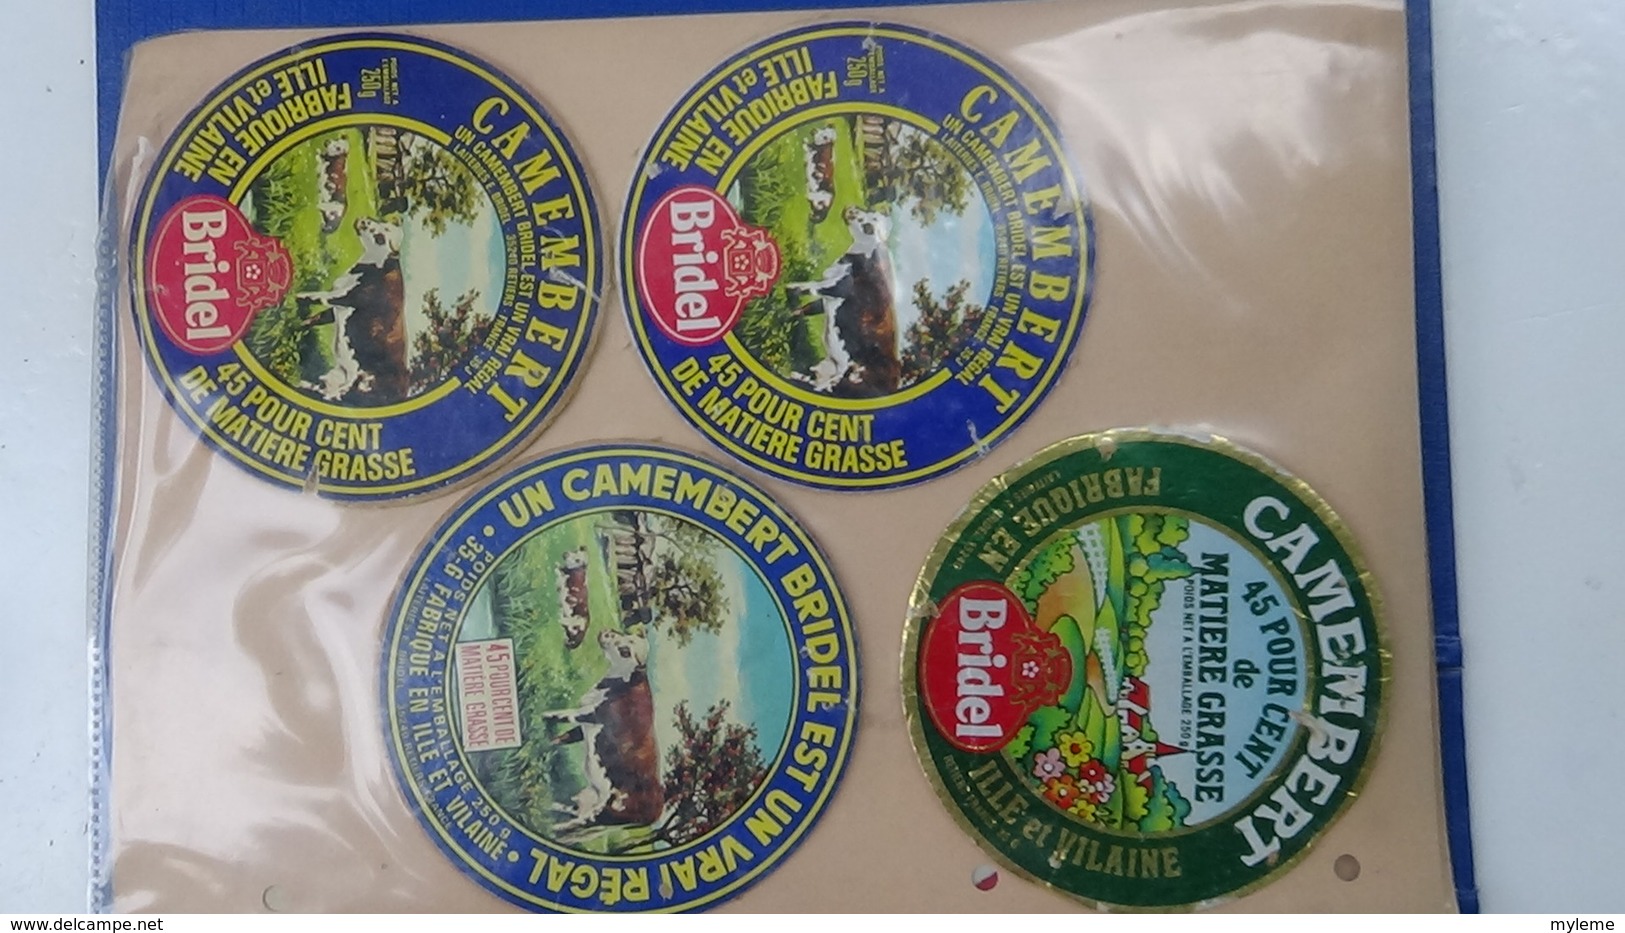 Grosse collection de couvercles et étiquettes (173 dans ce classeur) de fromages Français.6/10 Voir commentaires !!!